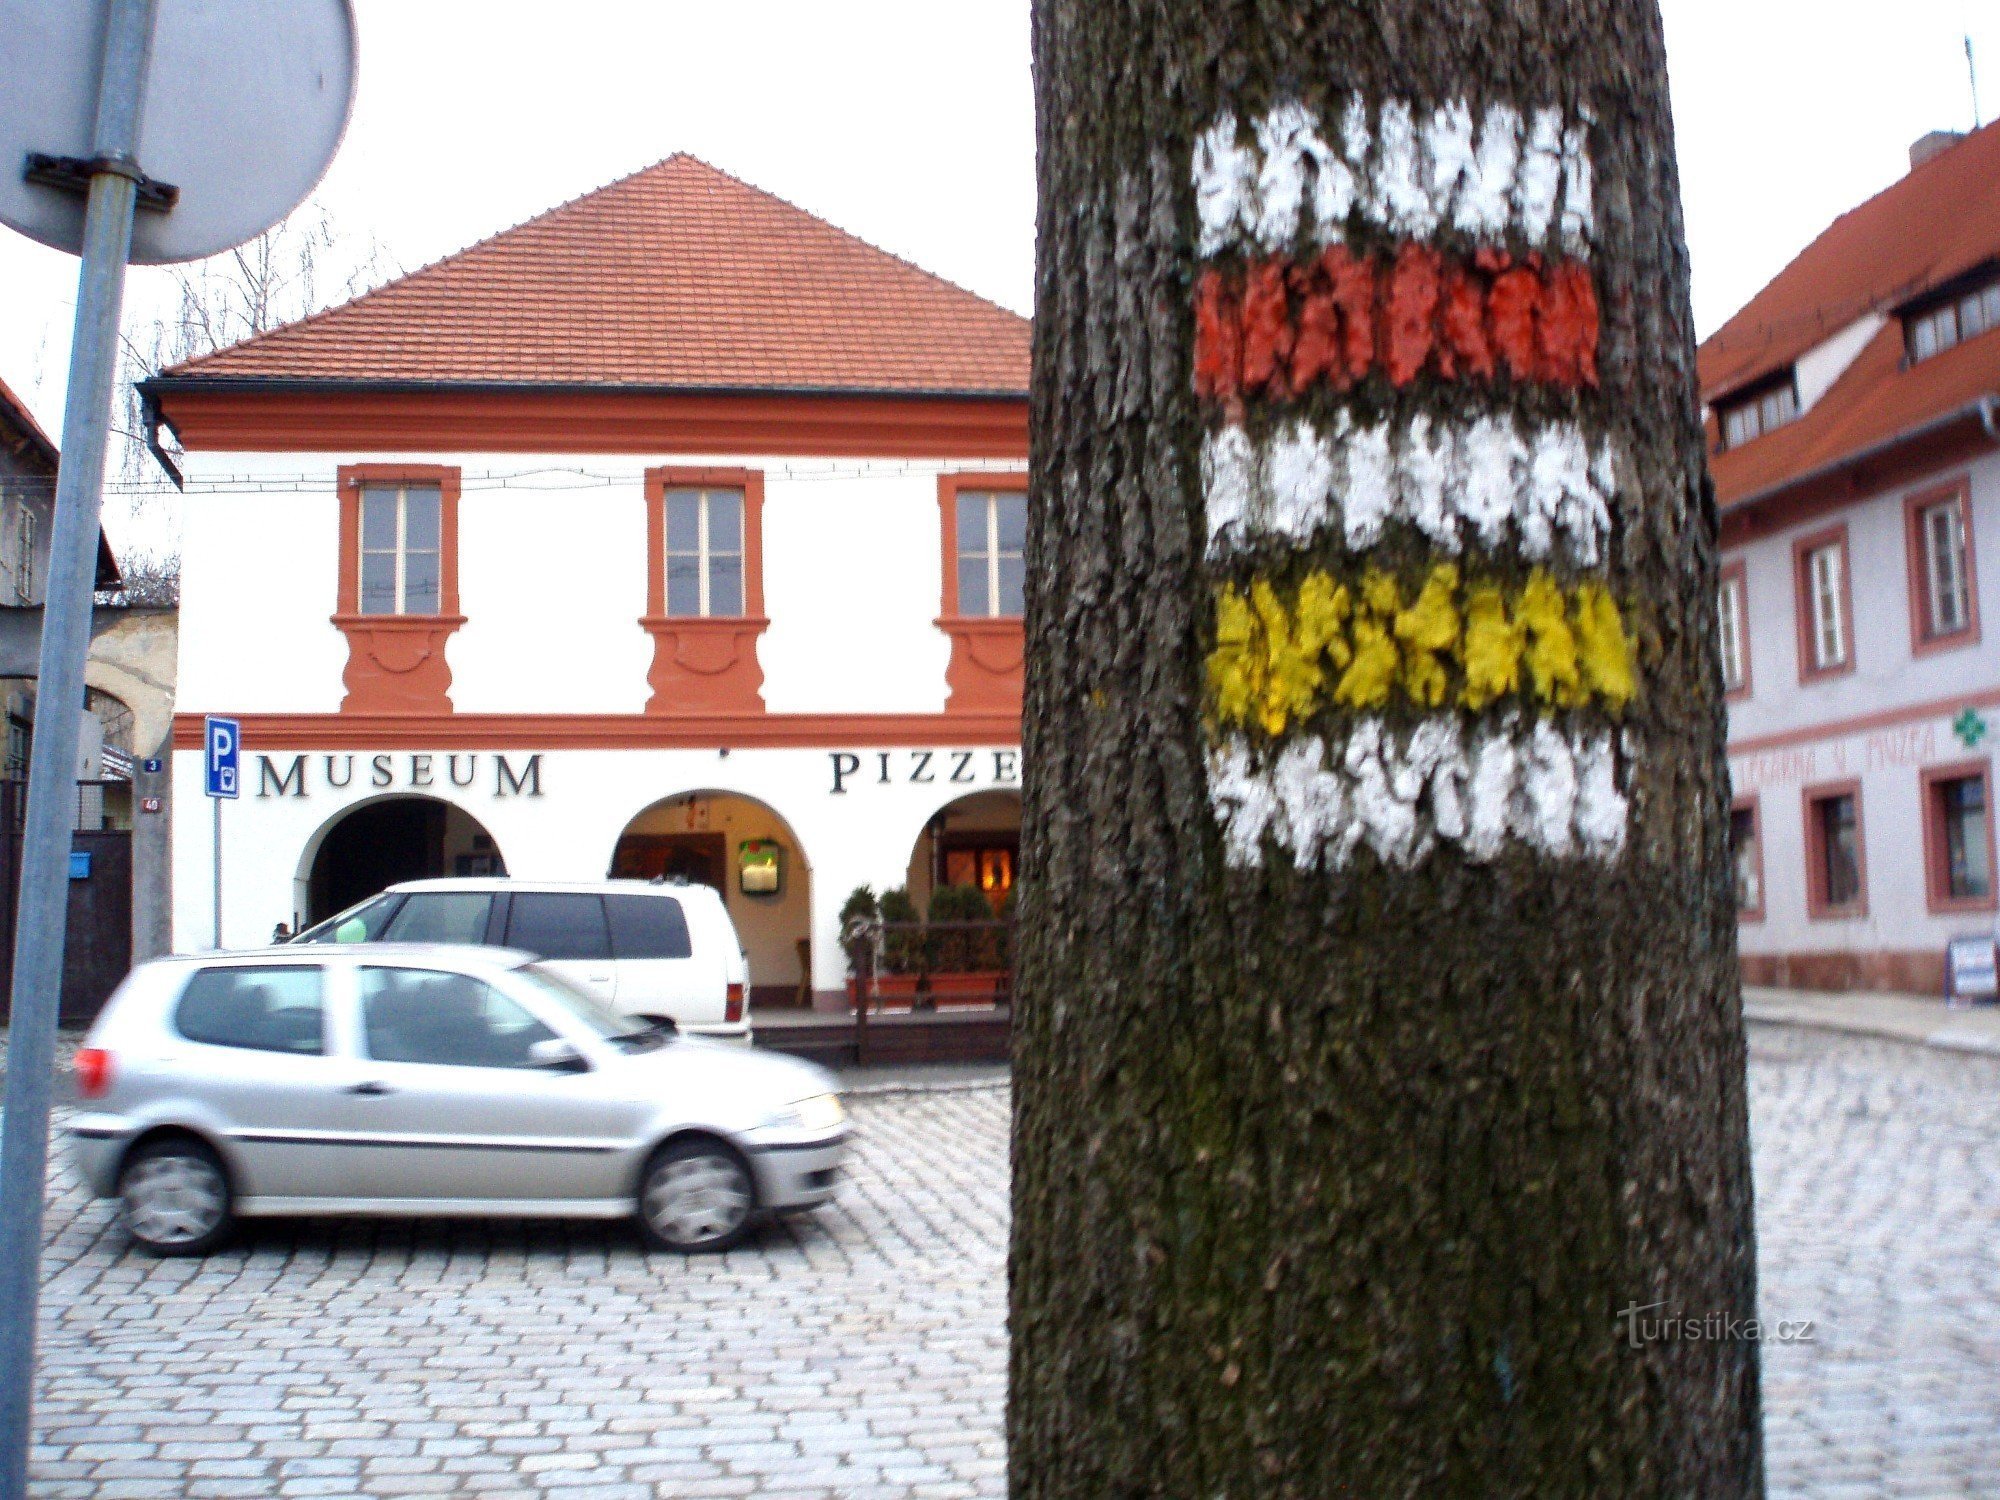 赤と黄色の観光標識、背景に陶器博物館